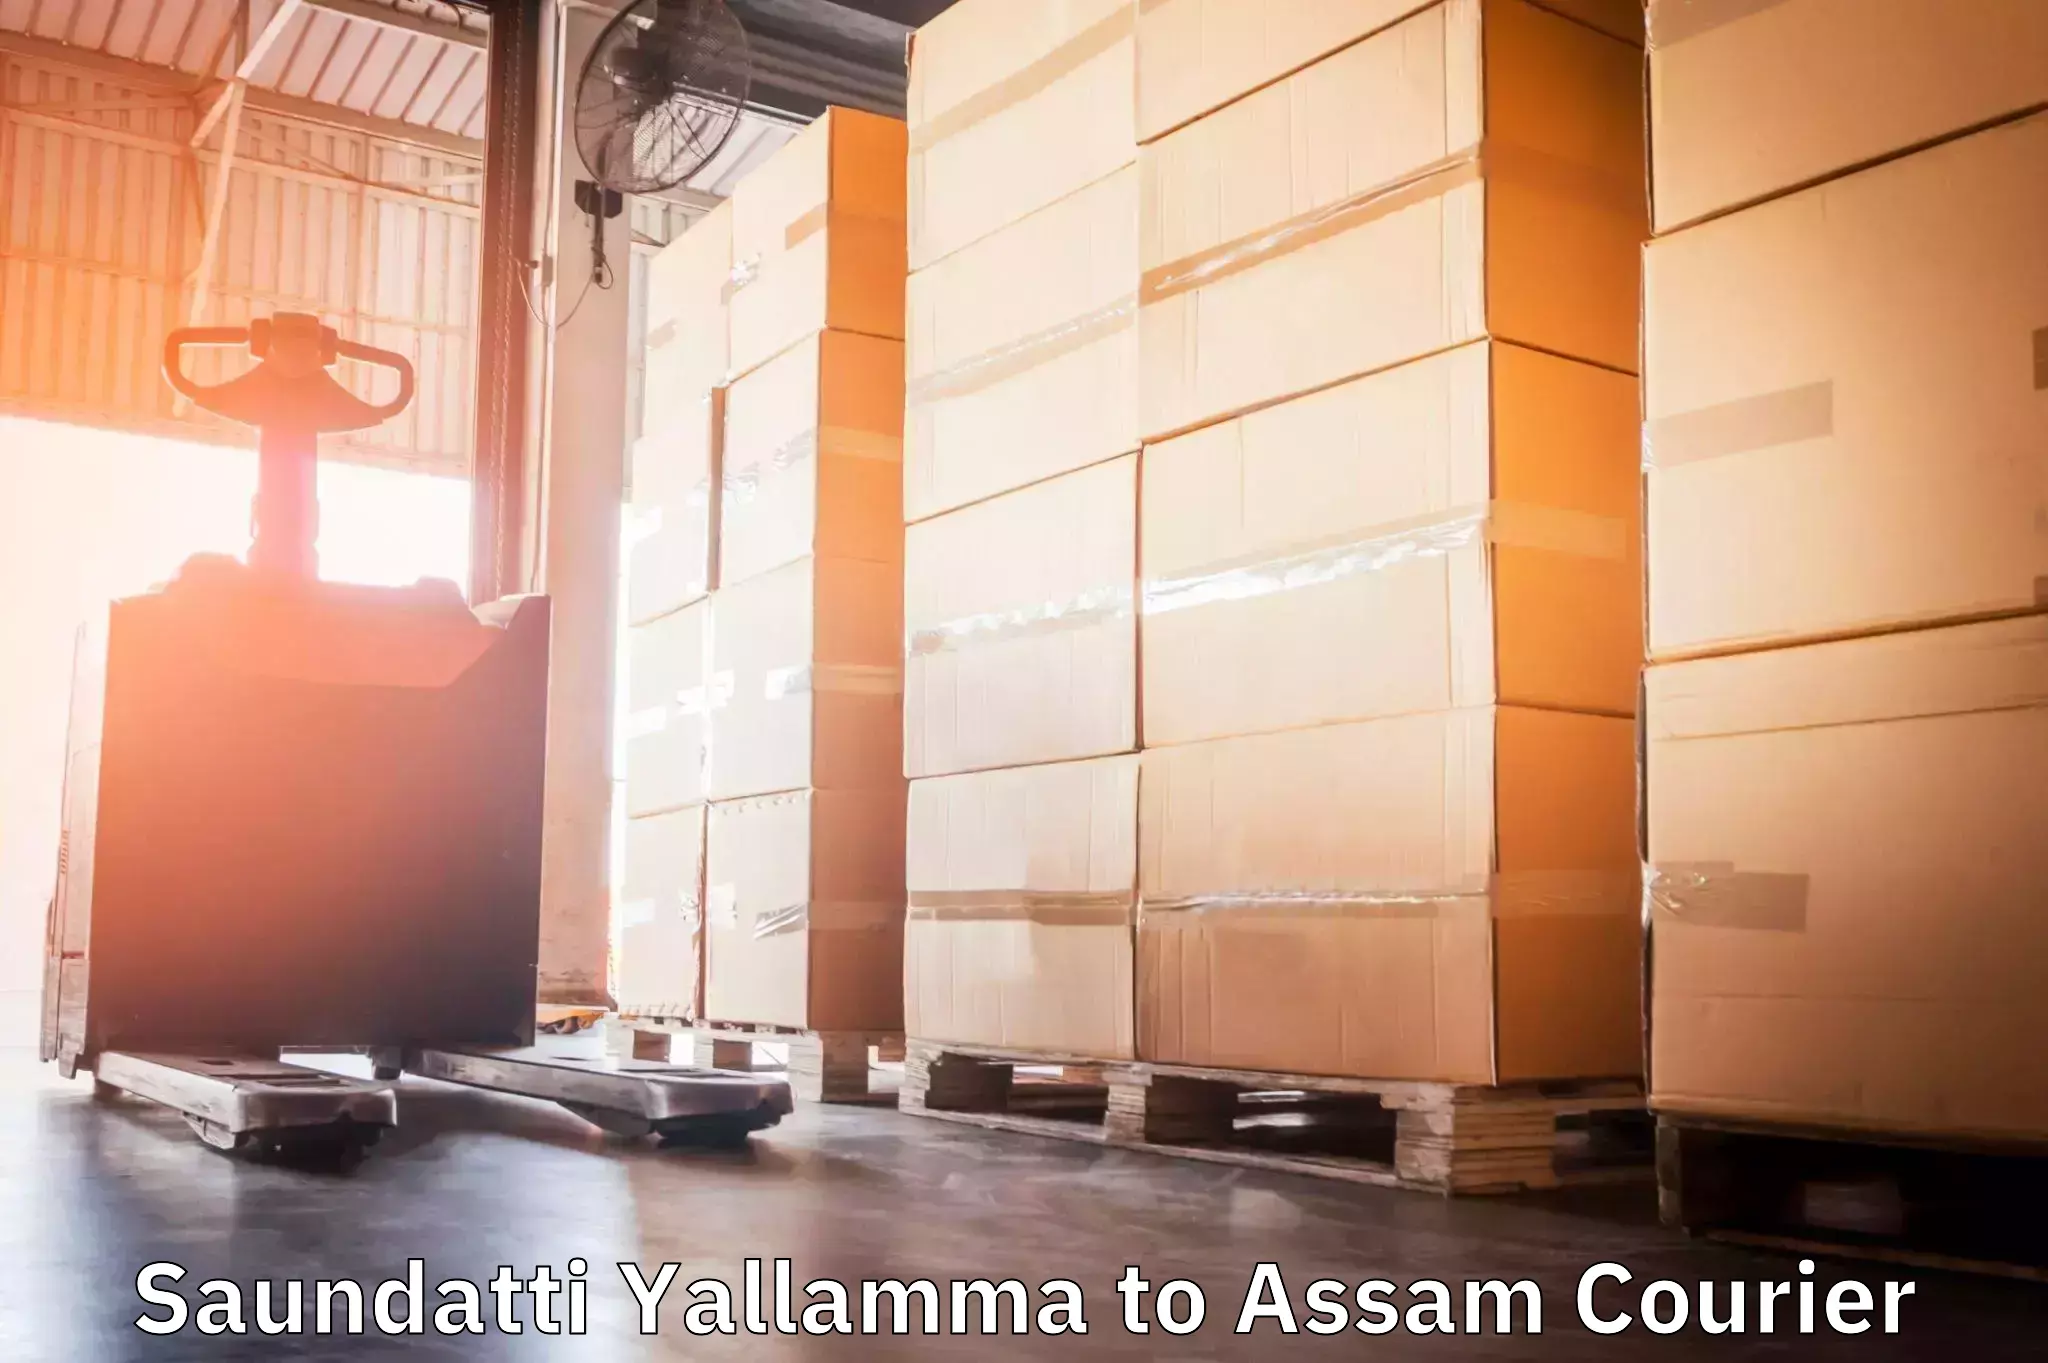 Urgent courier needs Saundatti Yallamma to Hojai Lanka